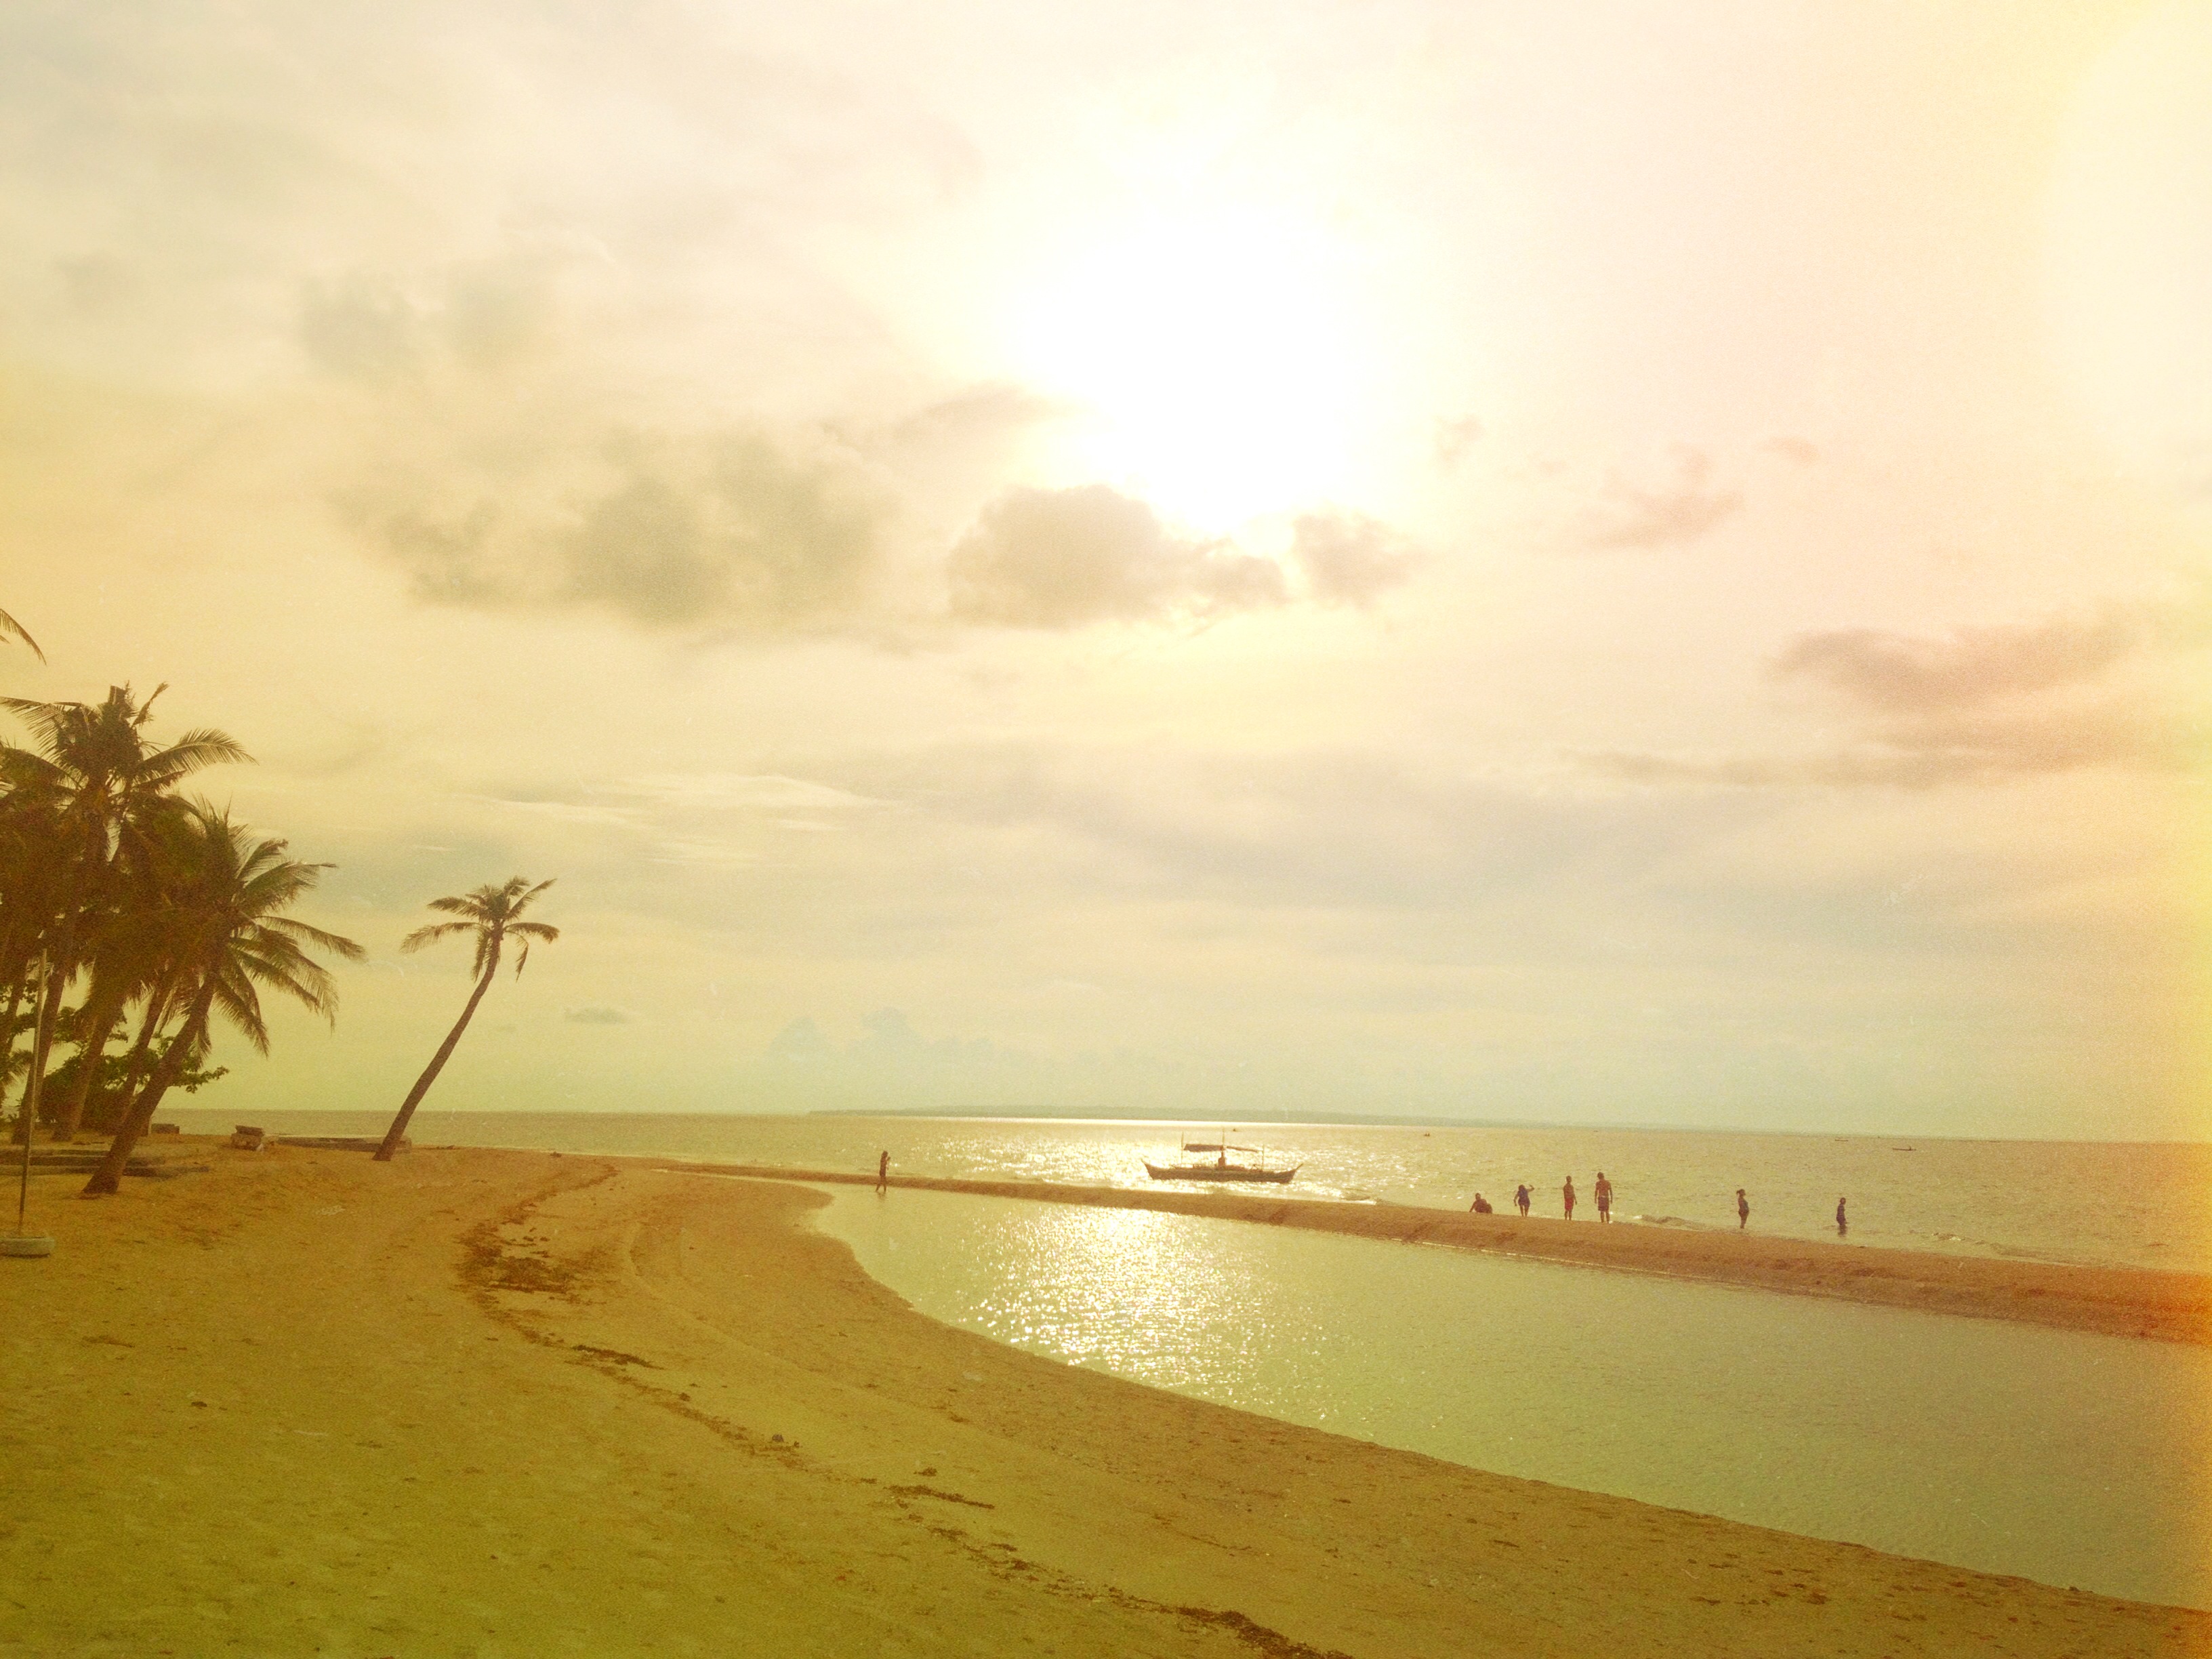 セブ島でどの様な週末にする 7つのオススメな週末の過ごしかた フィリピン最新情報ブログ